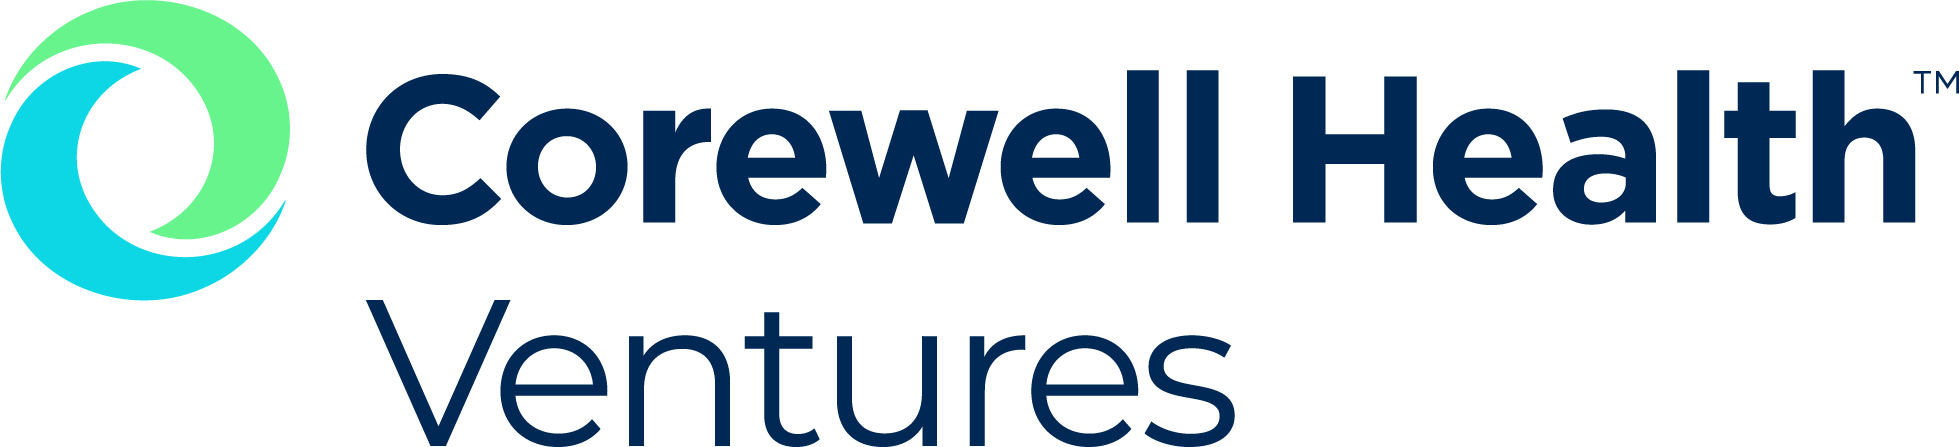 Corewell Health Ventures